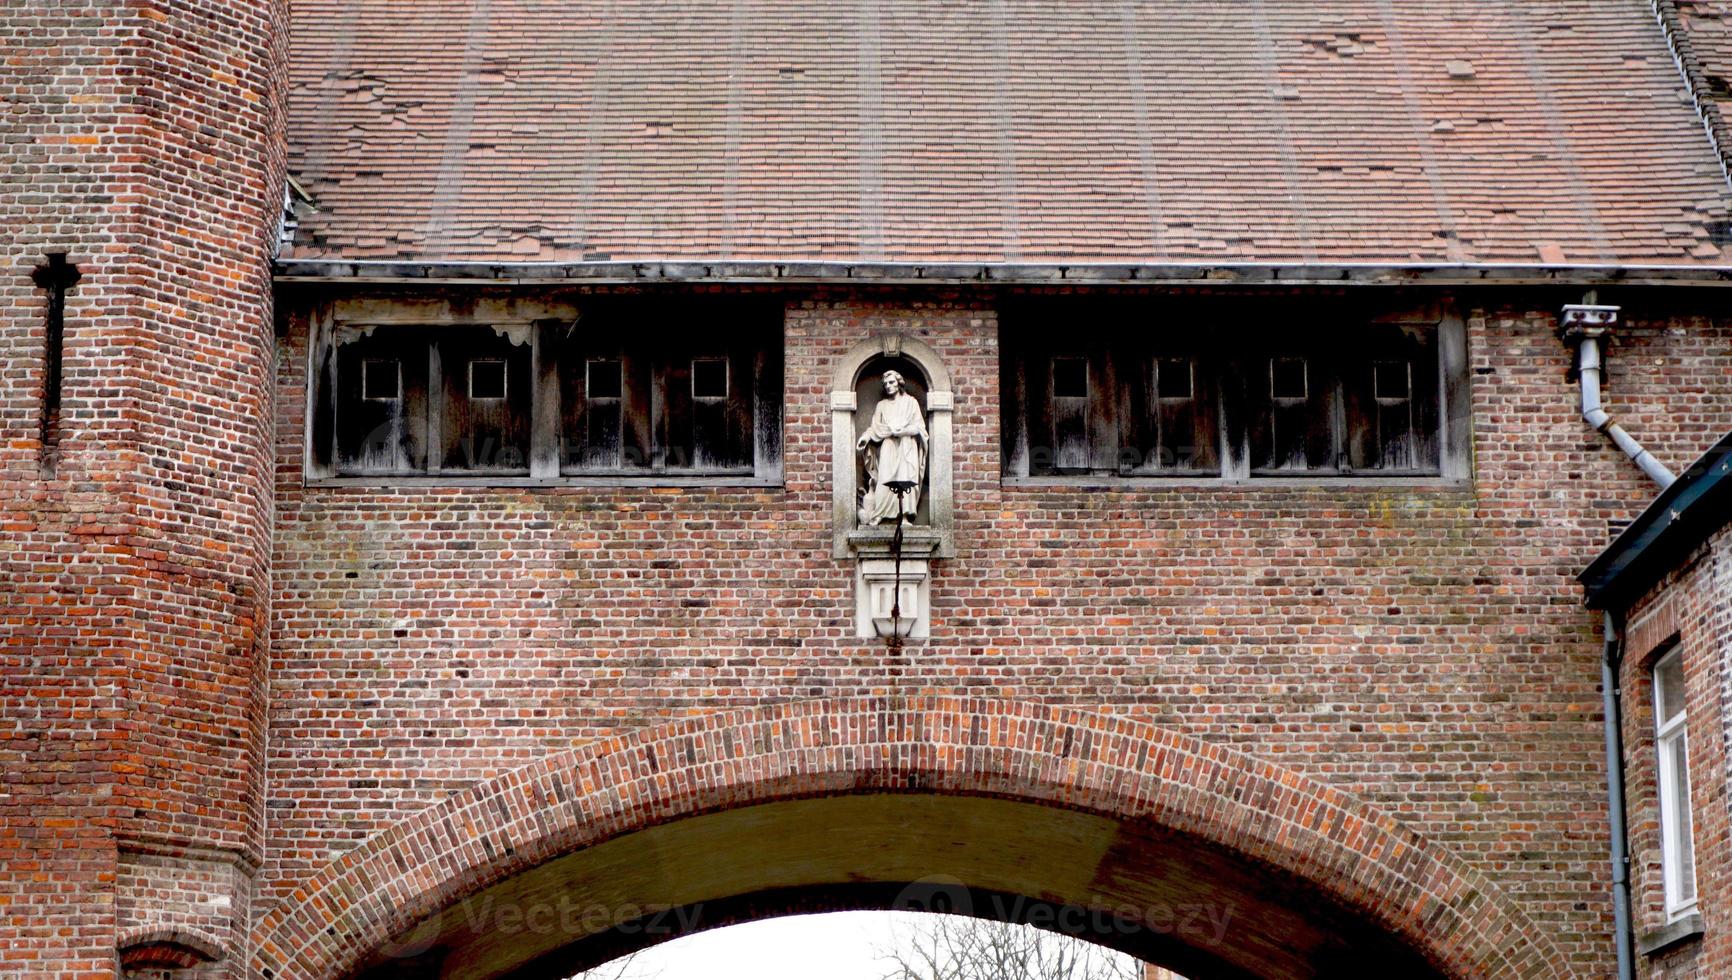 historische architectuur baksteen textuur details in brugge, belgië, europa foto